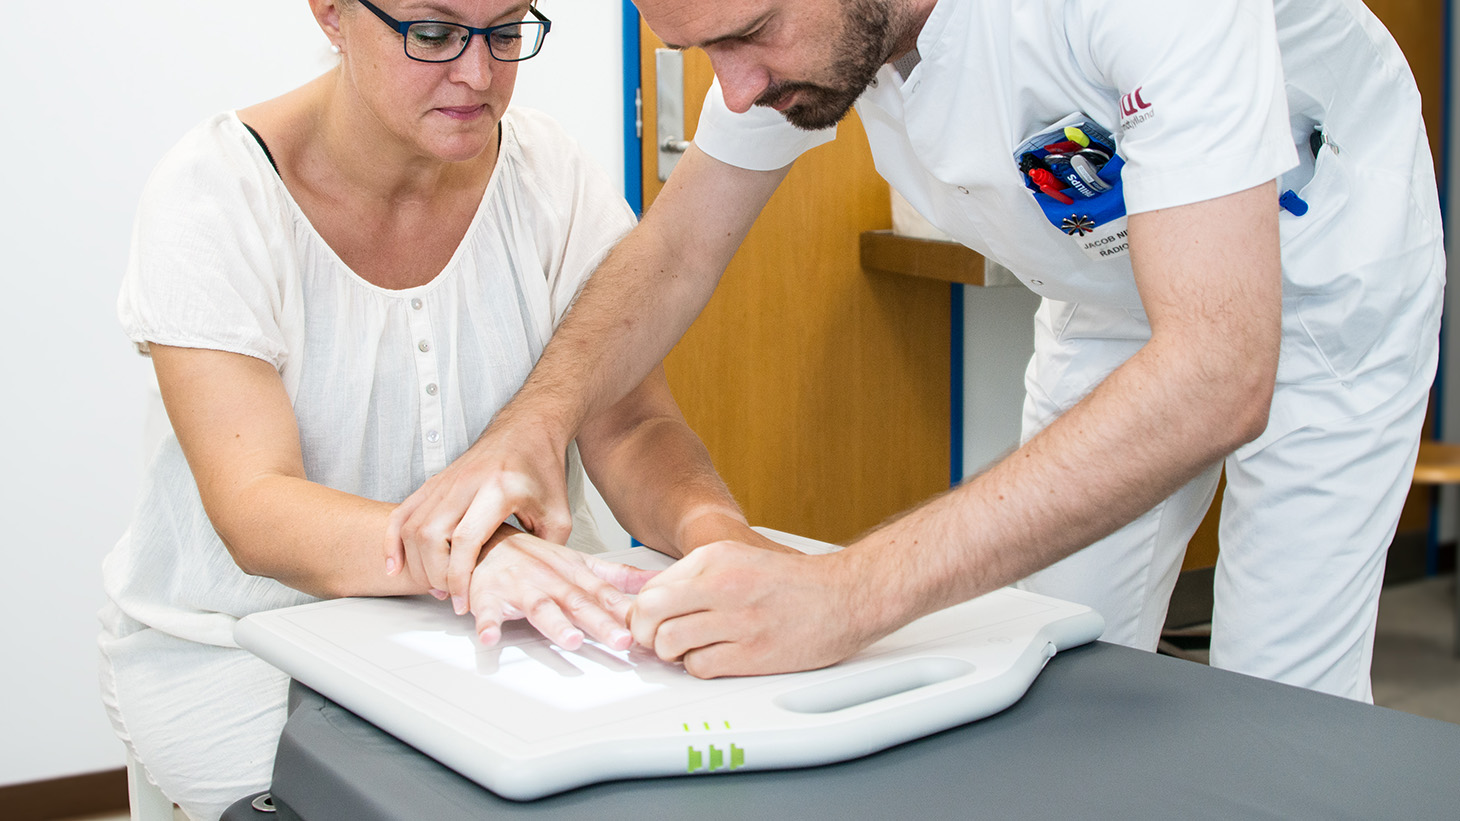 Medarbejder justerer kvindes hånd for at kunne tage et røntgenbillede